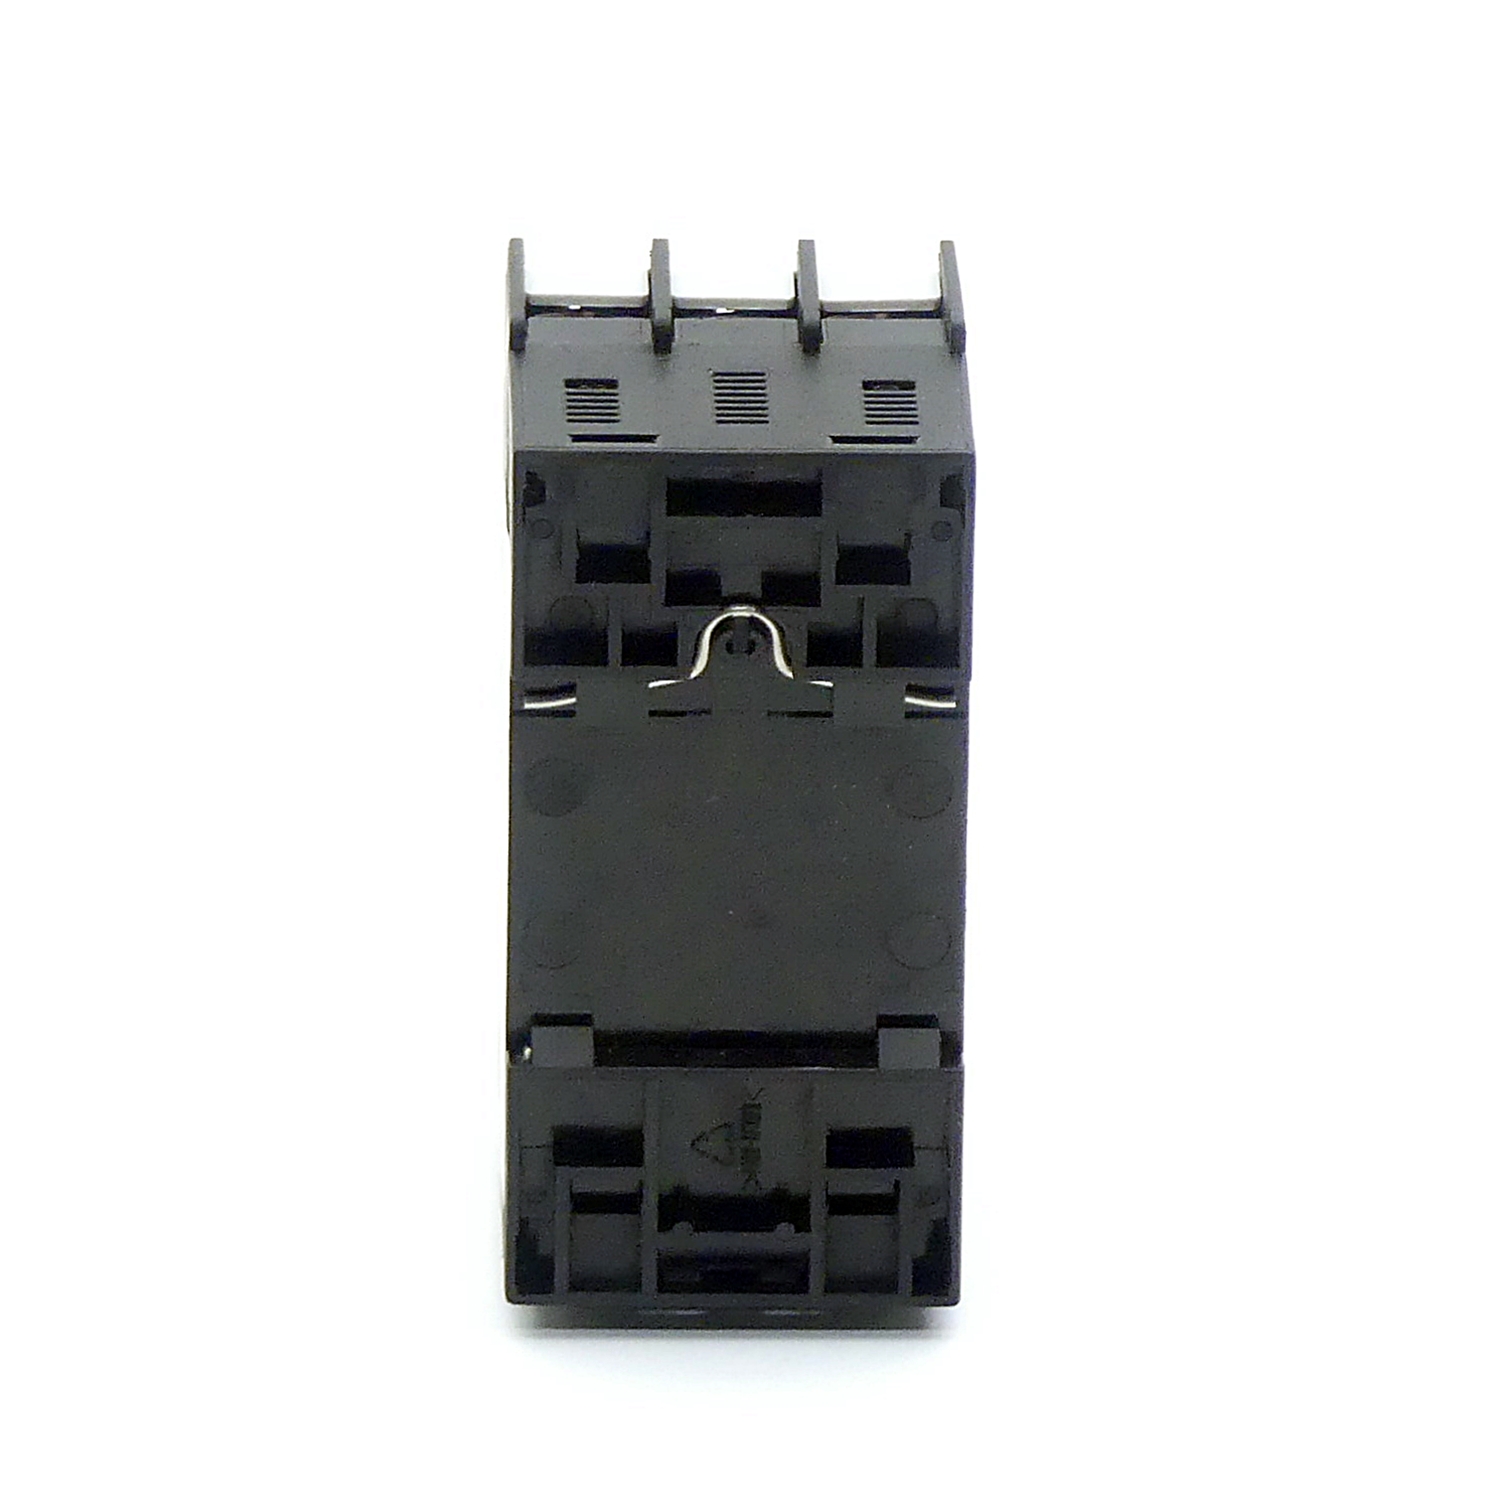 Sirius Circuit breaker 3RV1421-0GA10 